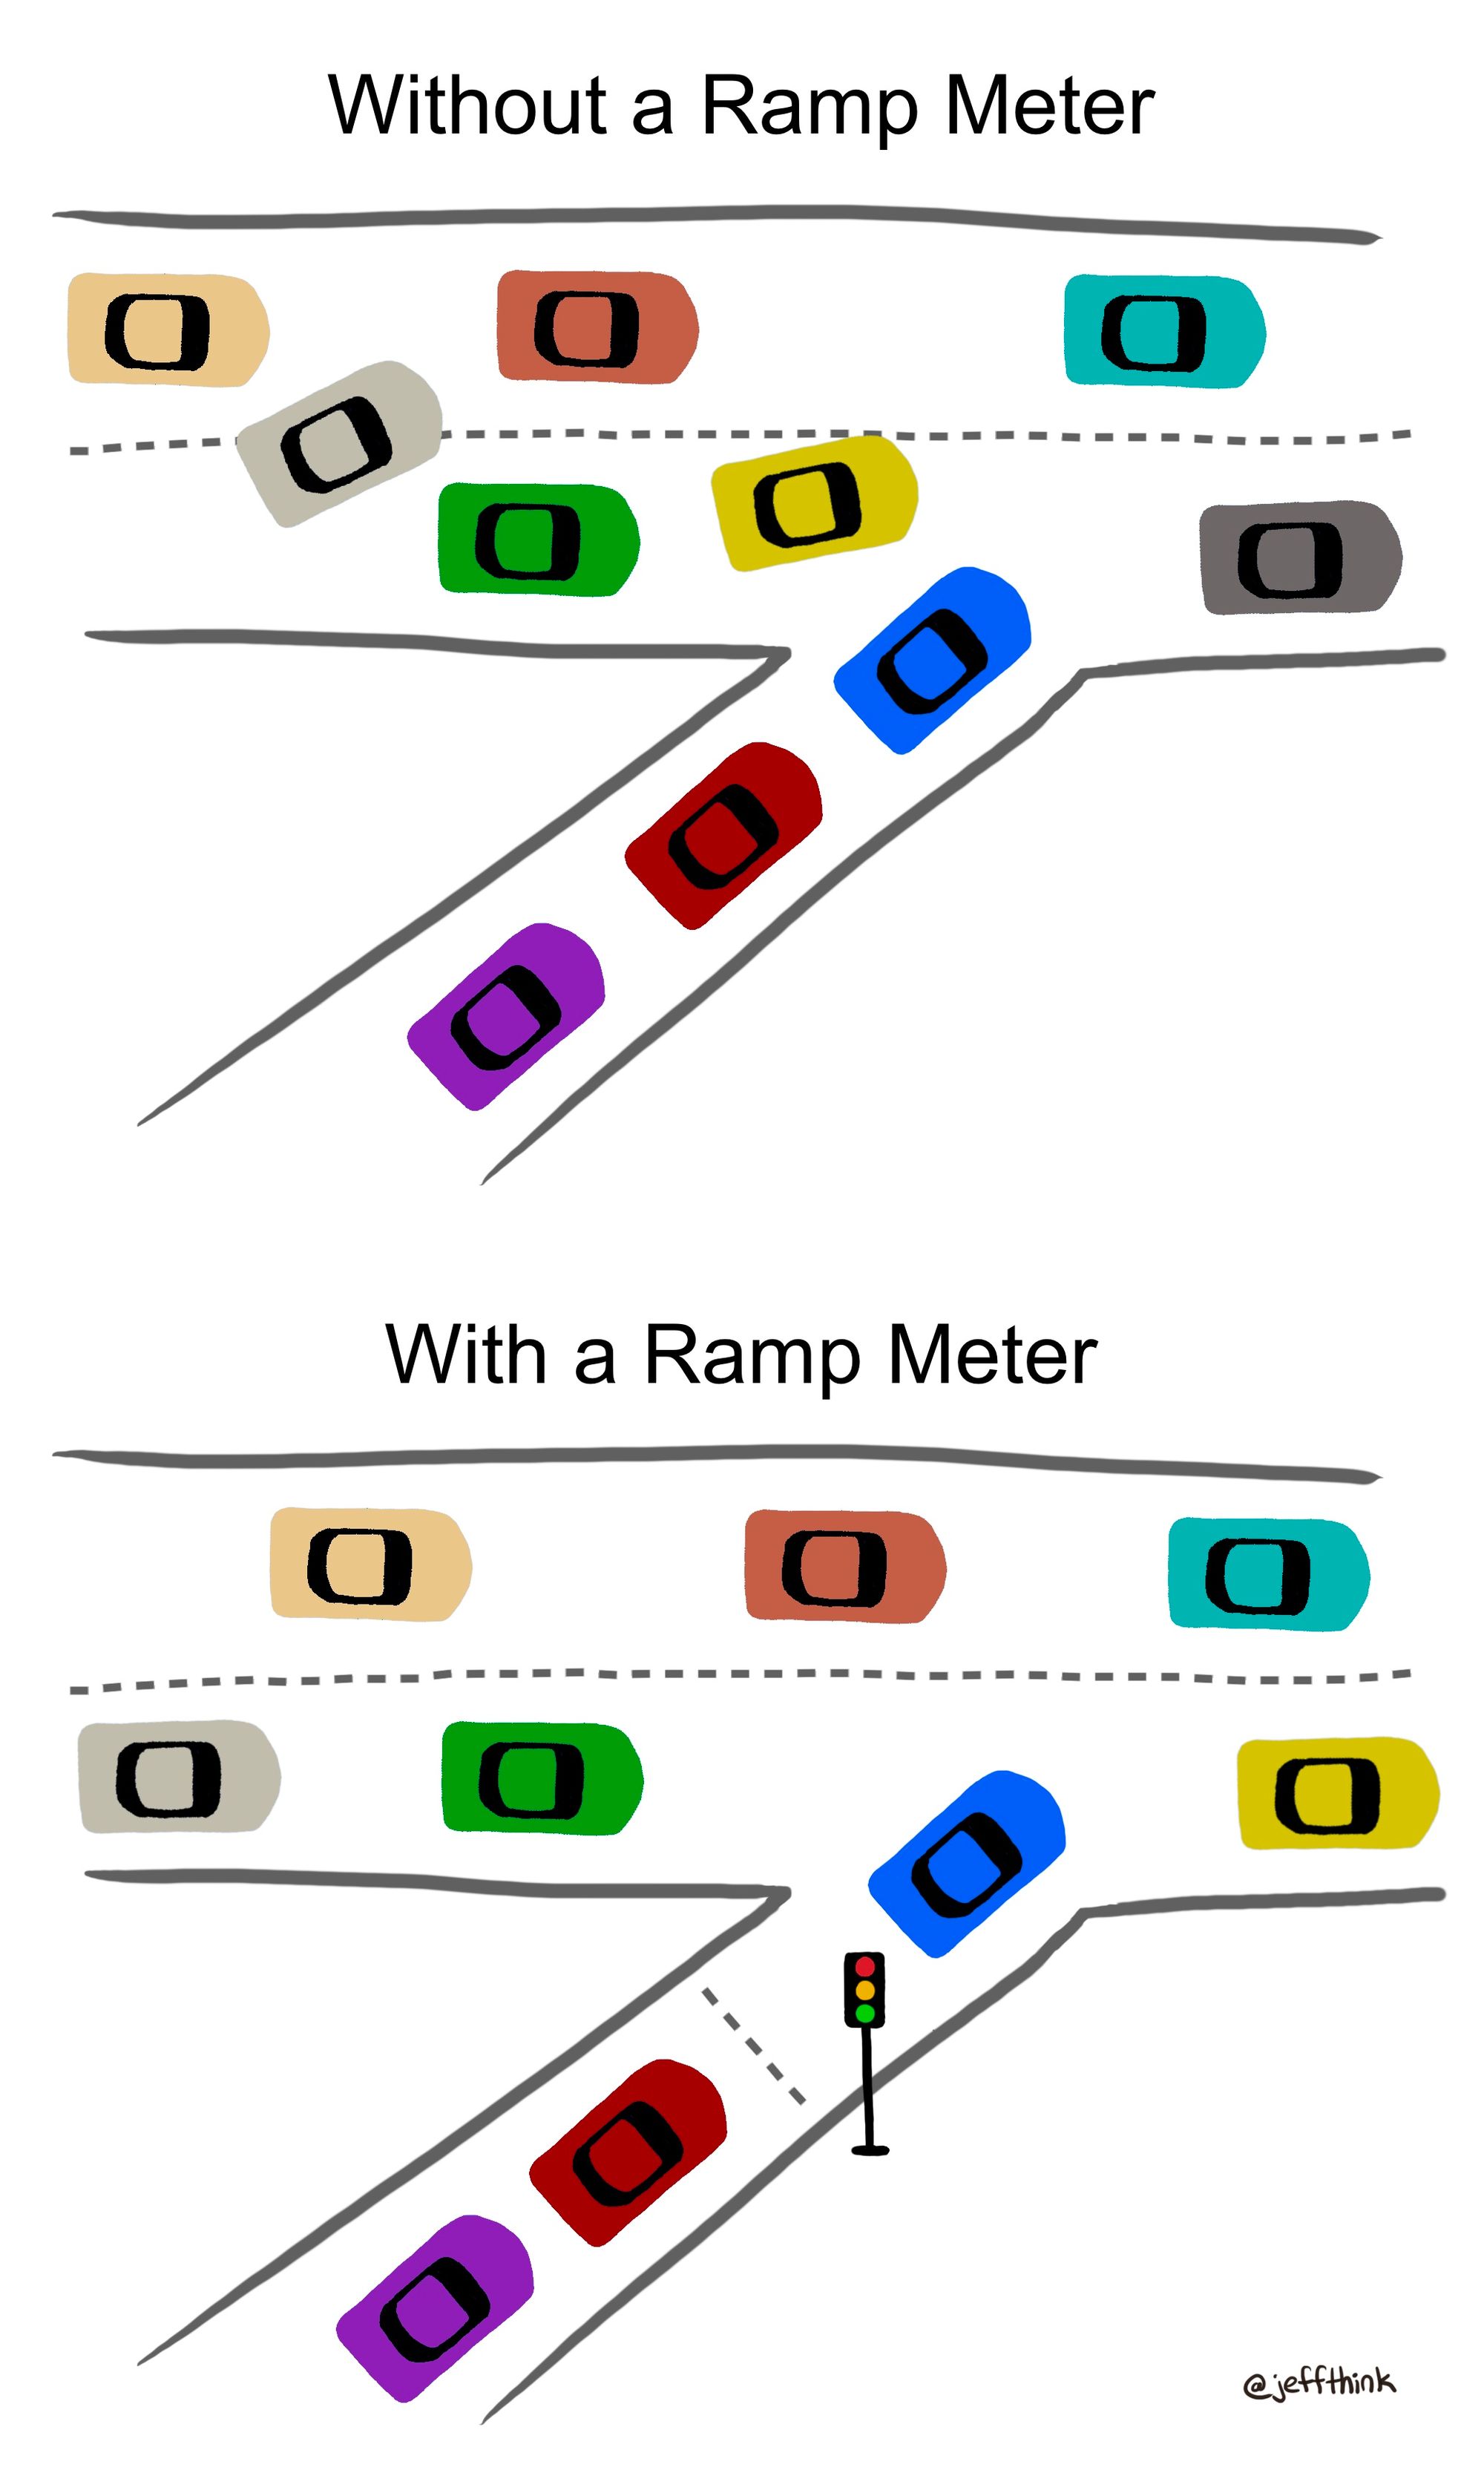 Ramp meters reduce congestion on highways